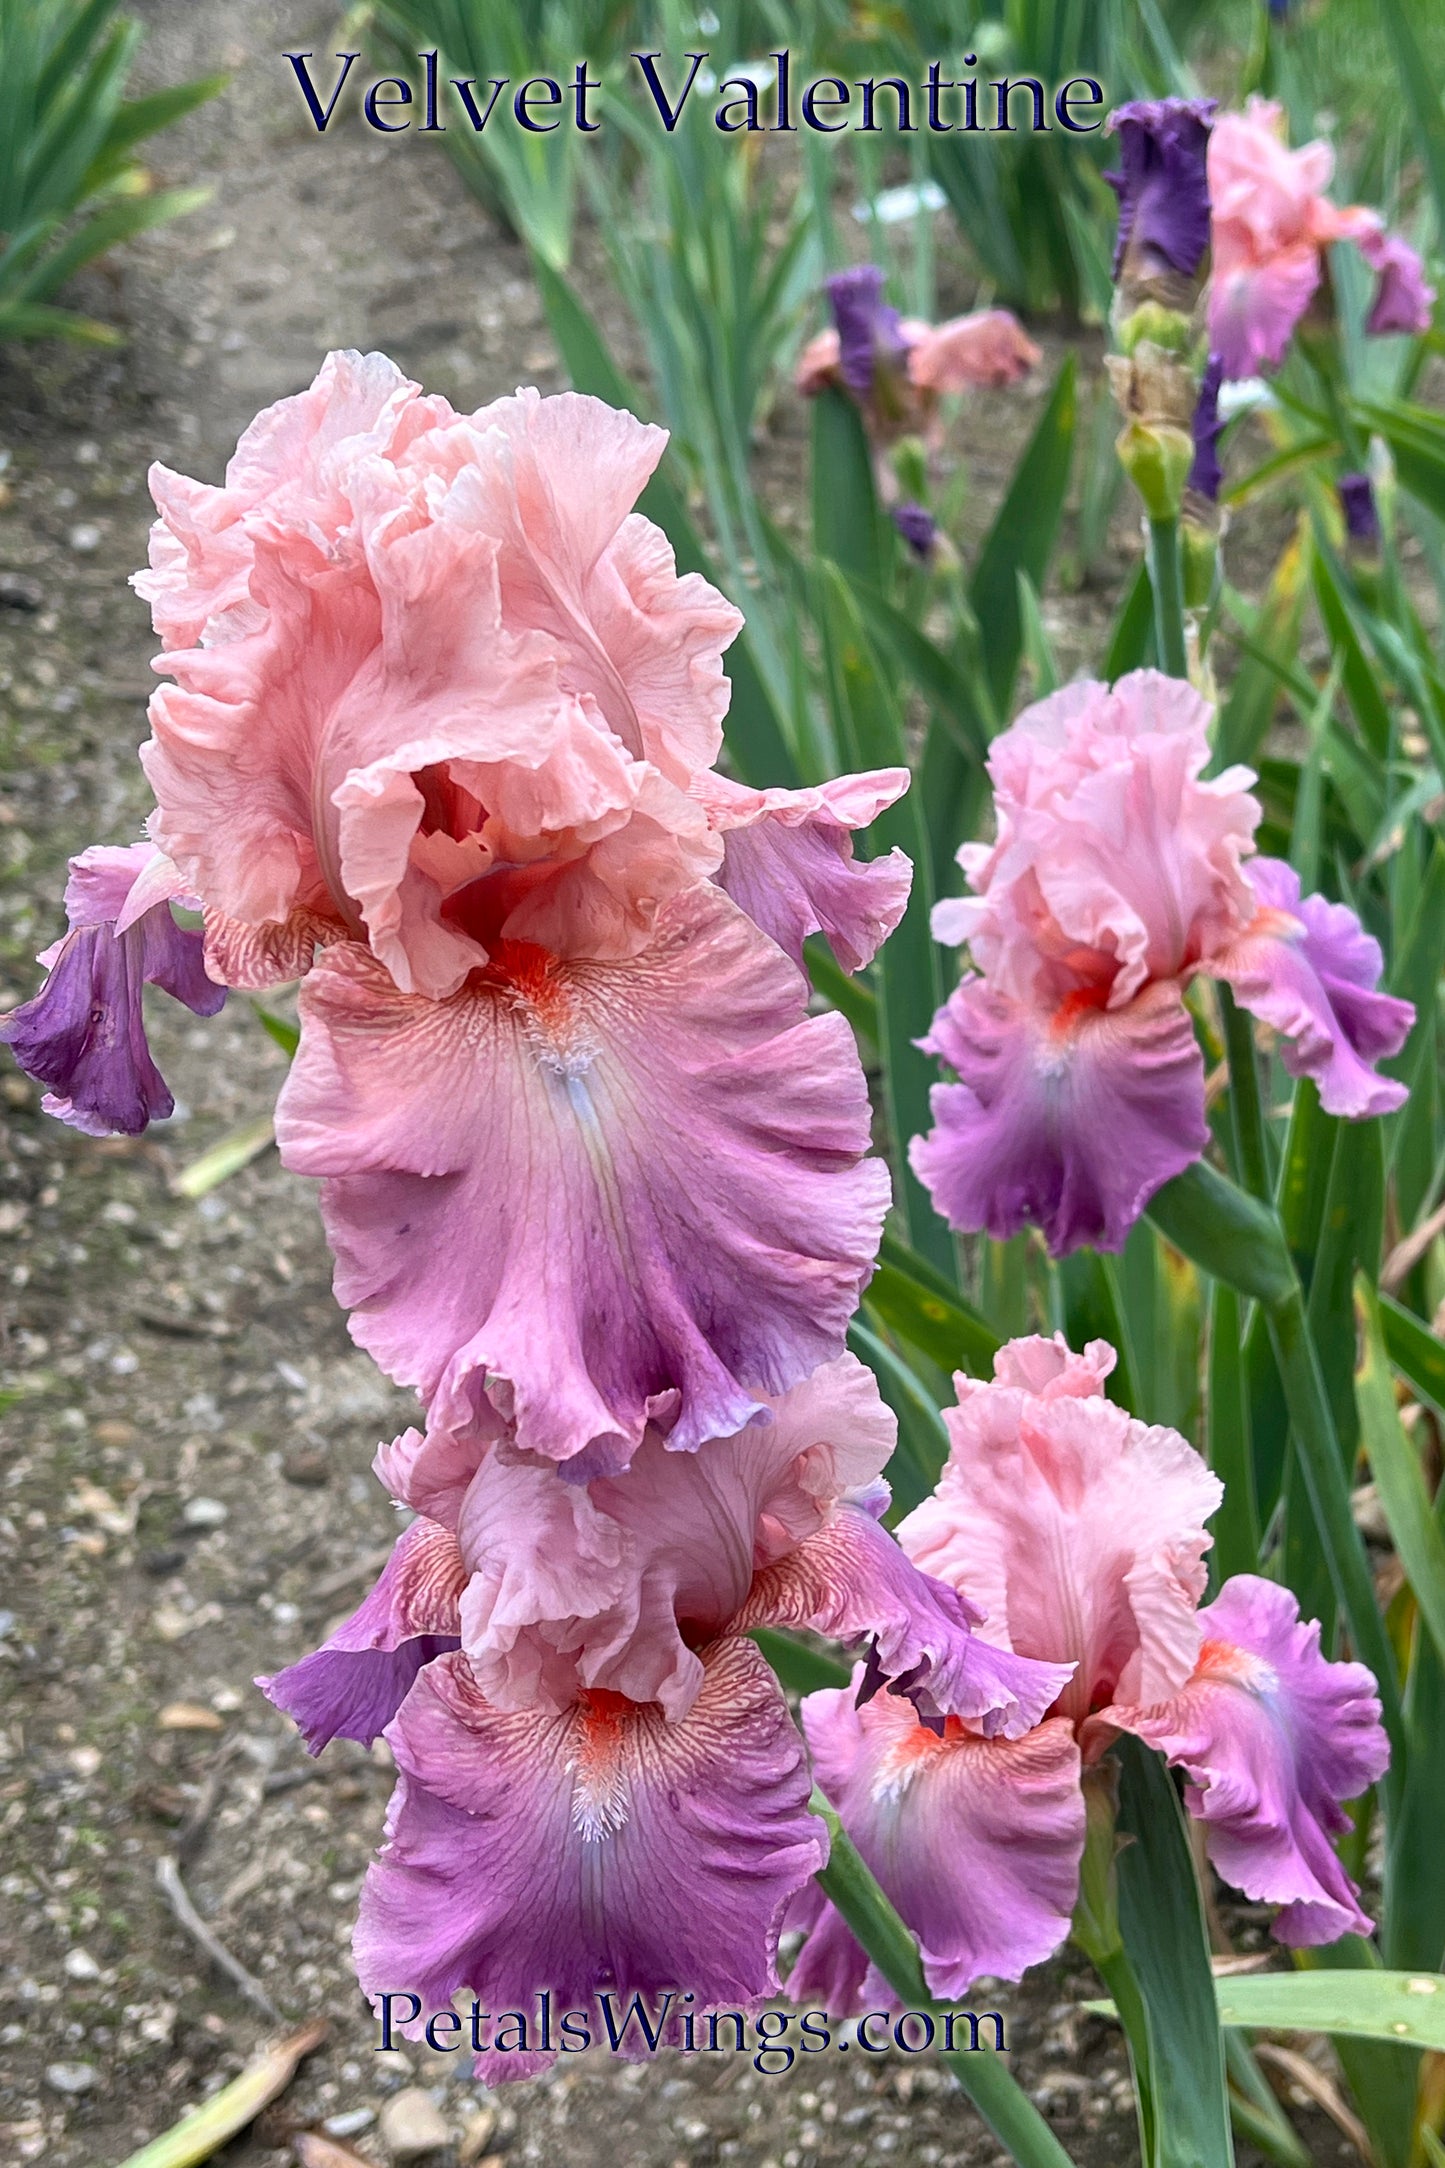 Velvet Valentine - 2015 Tall Bearded Iris